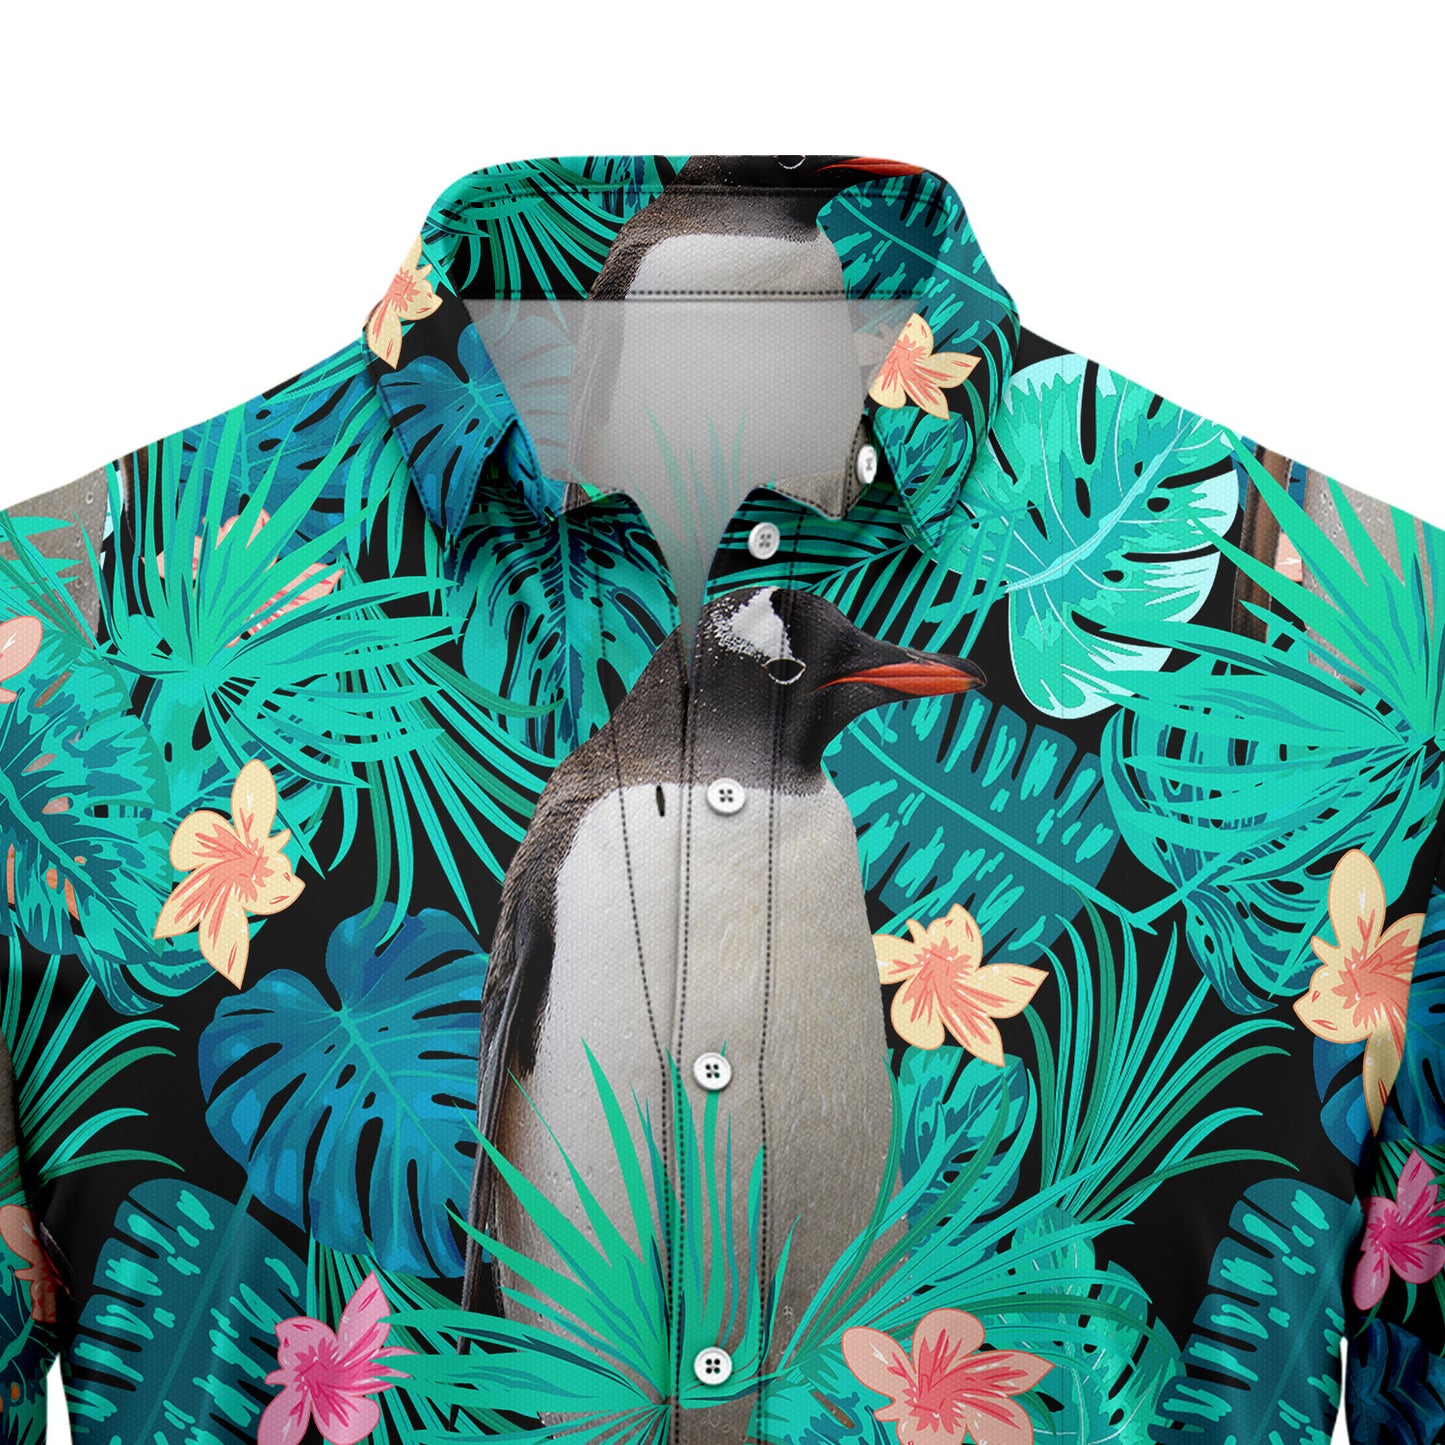 Penguin Tropical T0707 Hawaiian Shirt